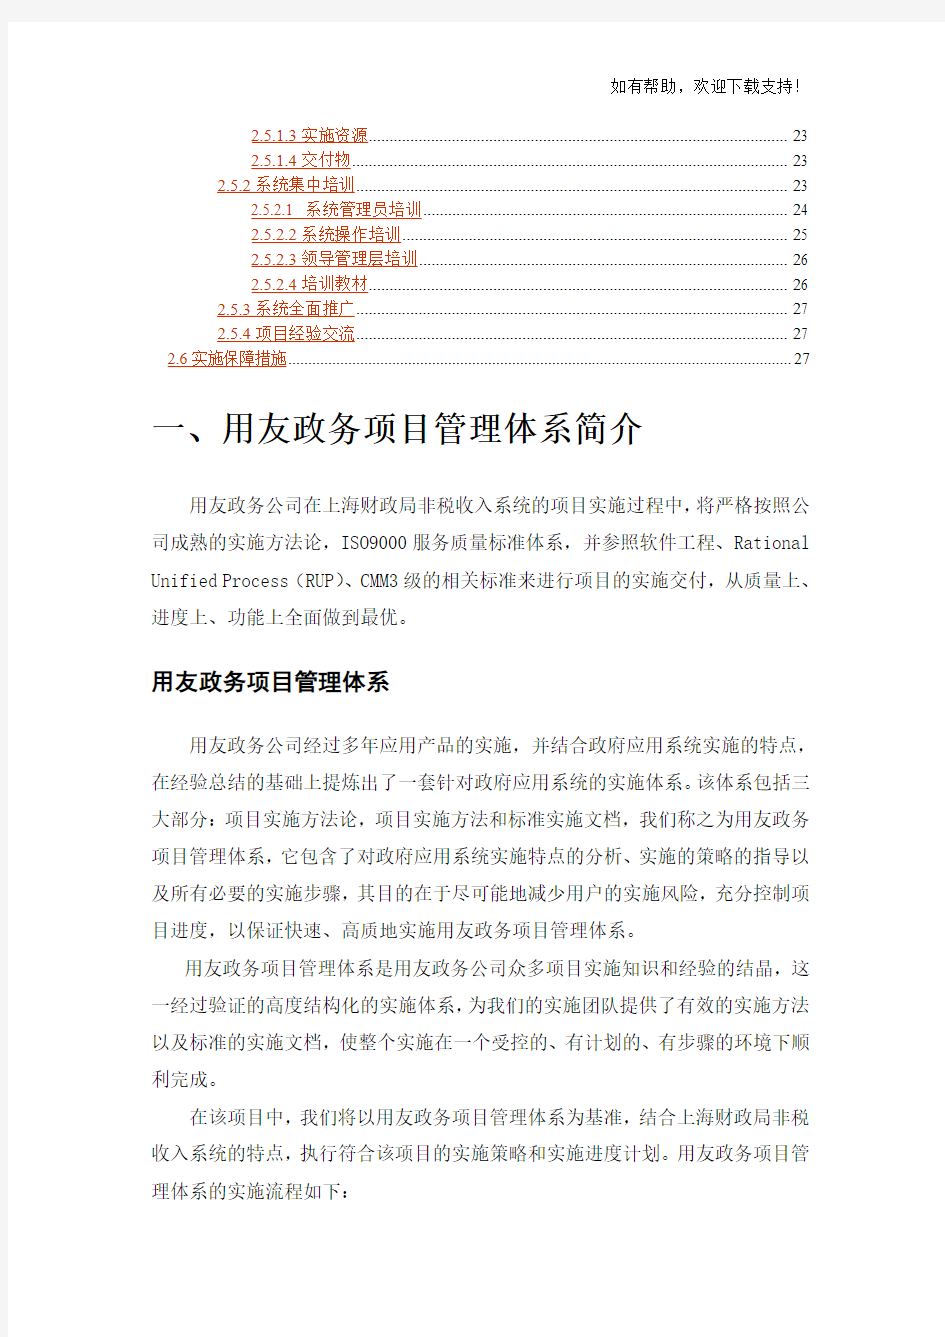 上海非税收入管理系统